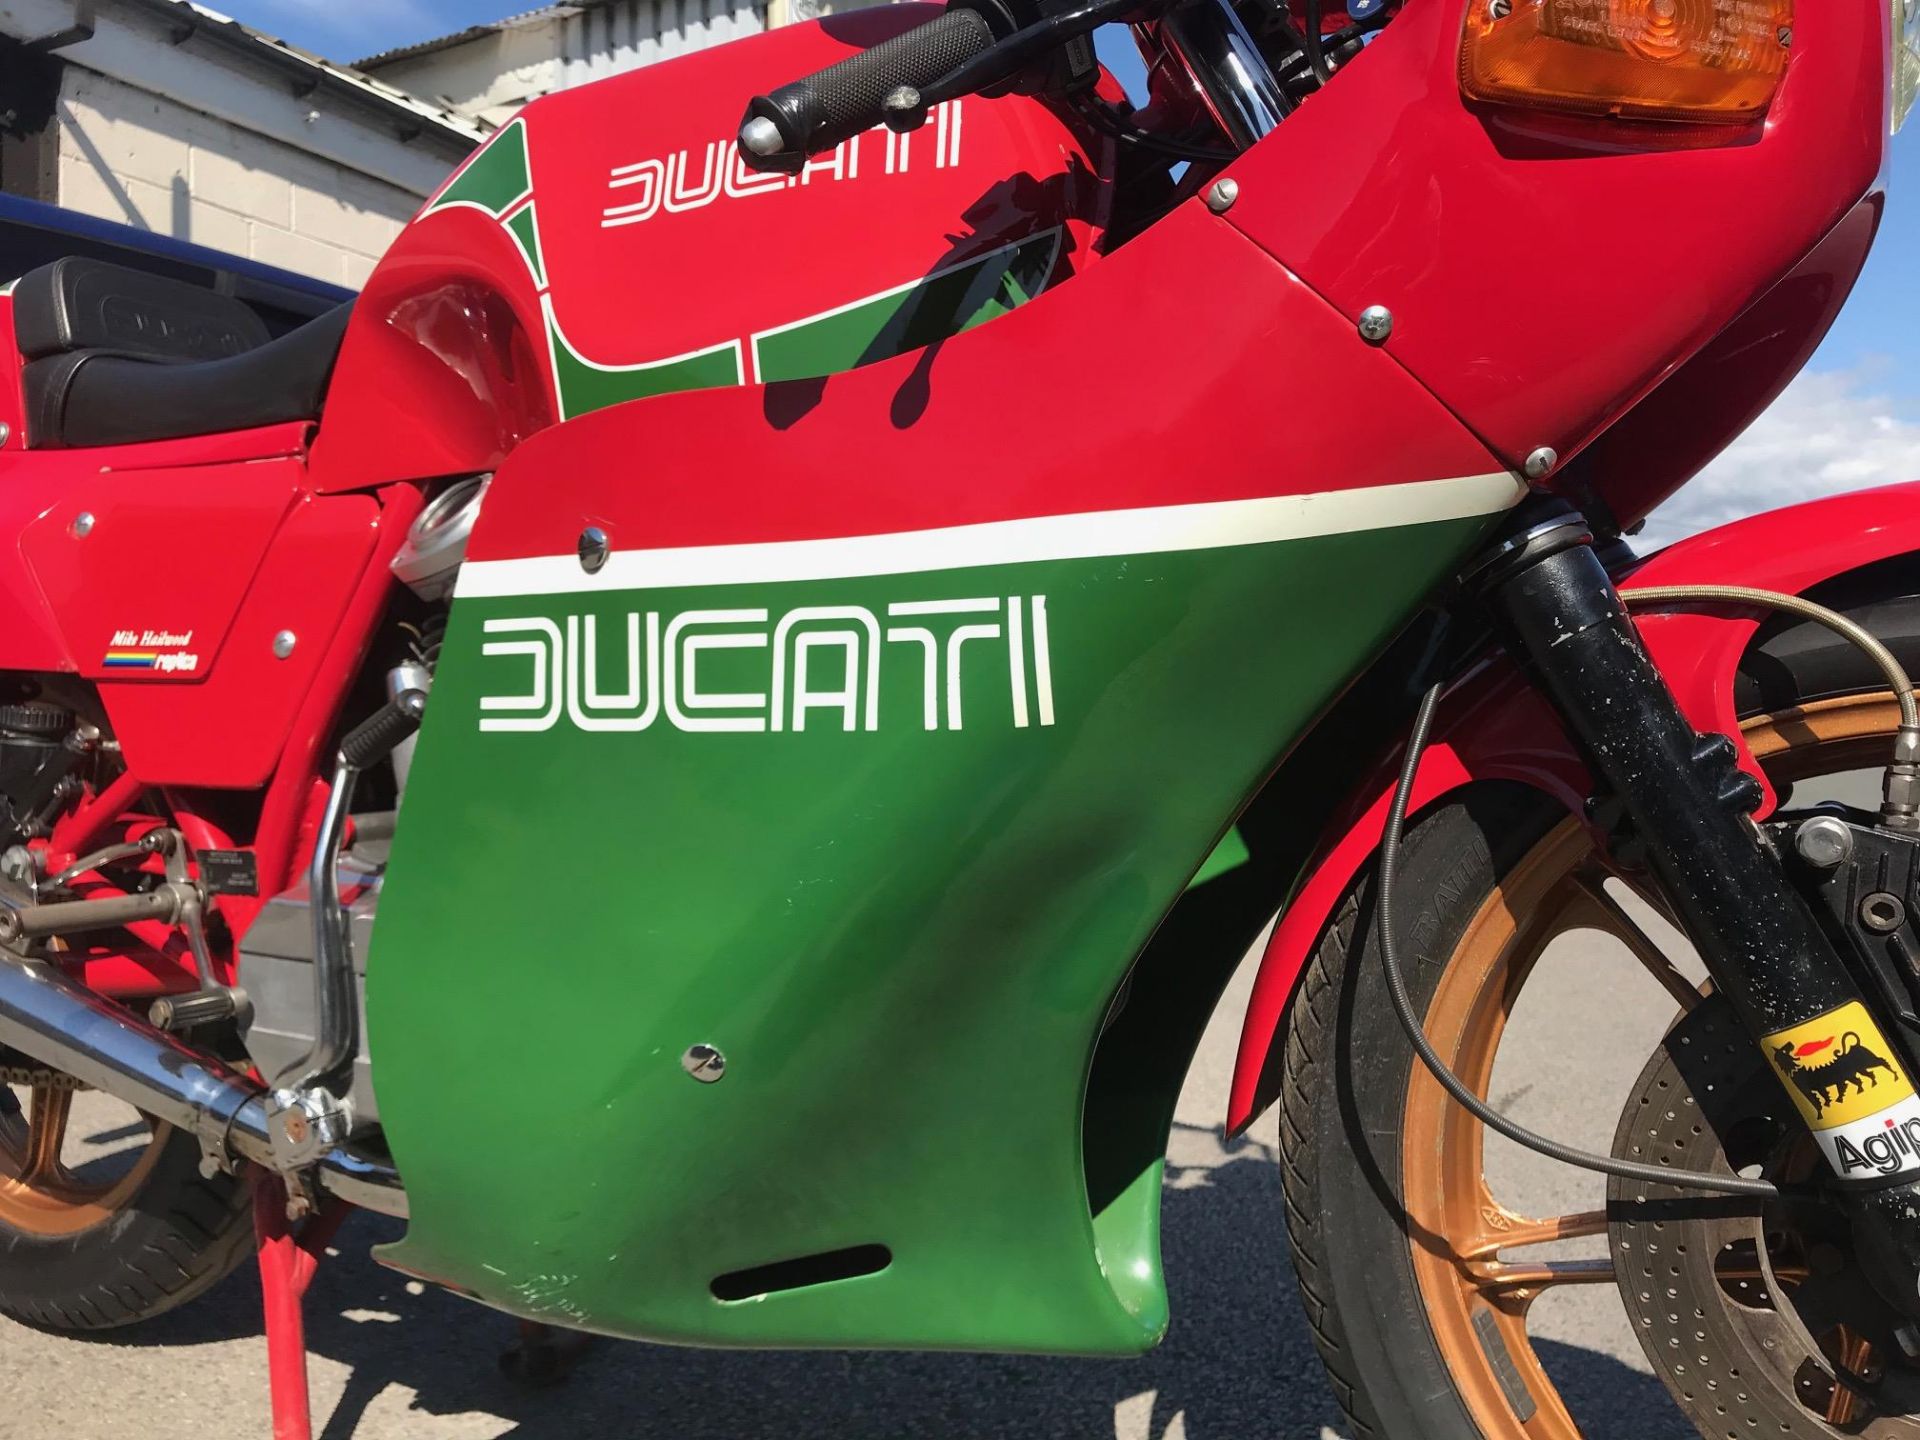 1982 Ducati MHR900 - Image 8 of 21